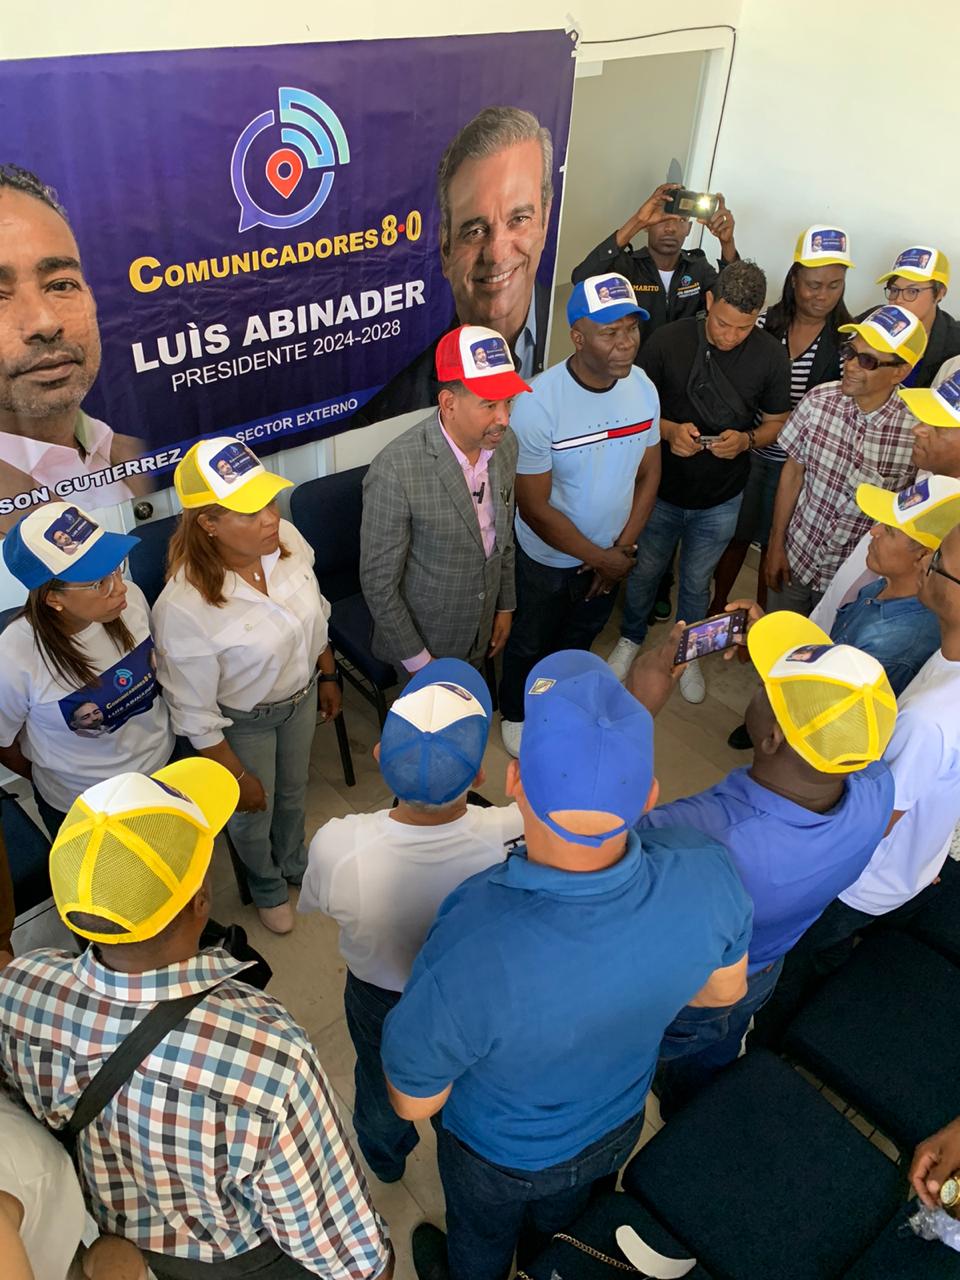 Comunicadores 8.0 Luis Abinader Presidente Juramenta Nuevos Miembros En San Pedro De Macorís